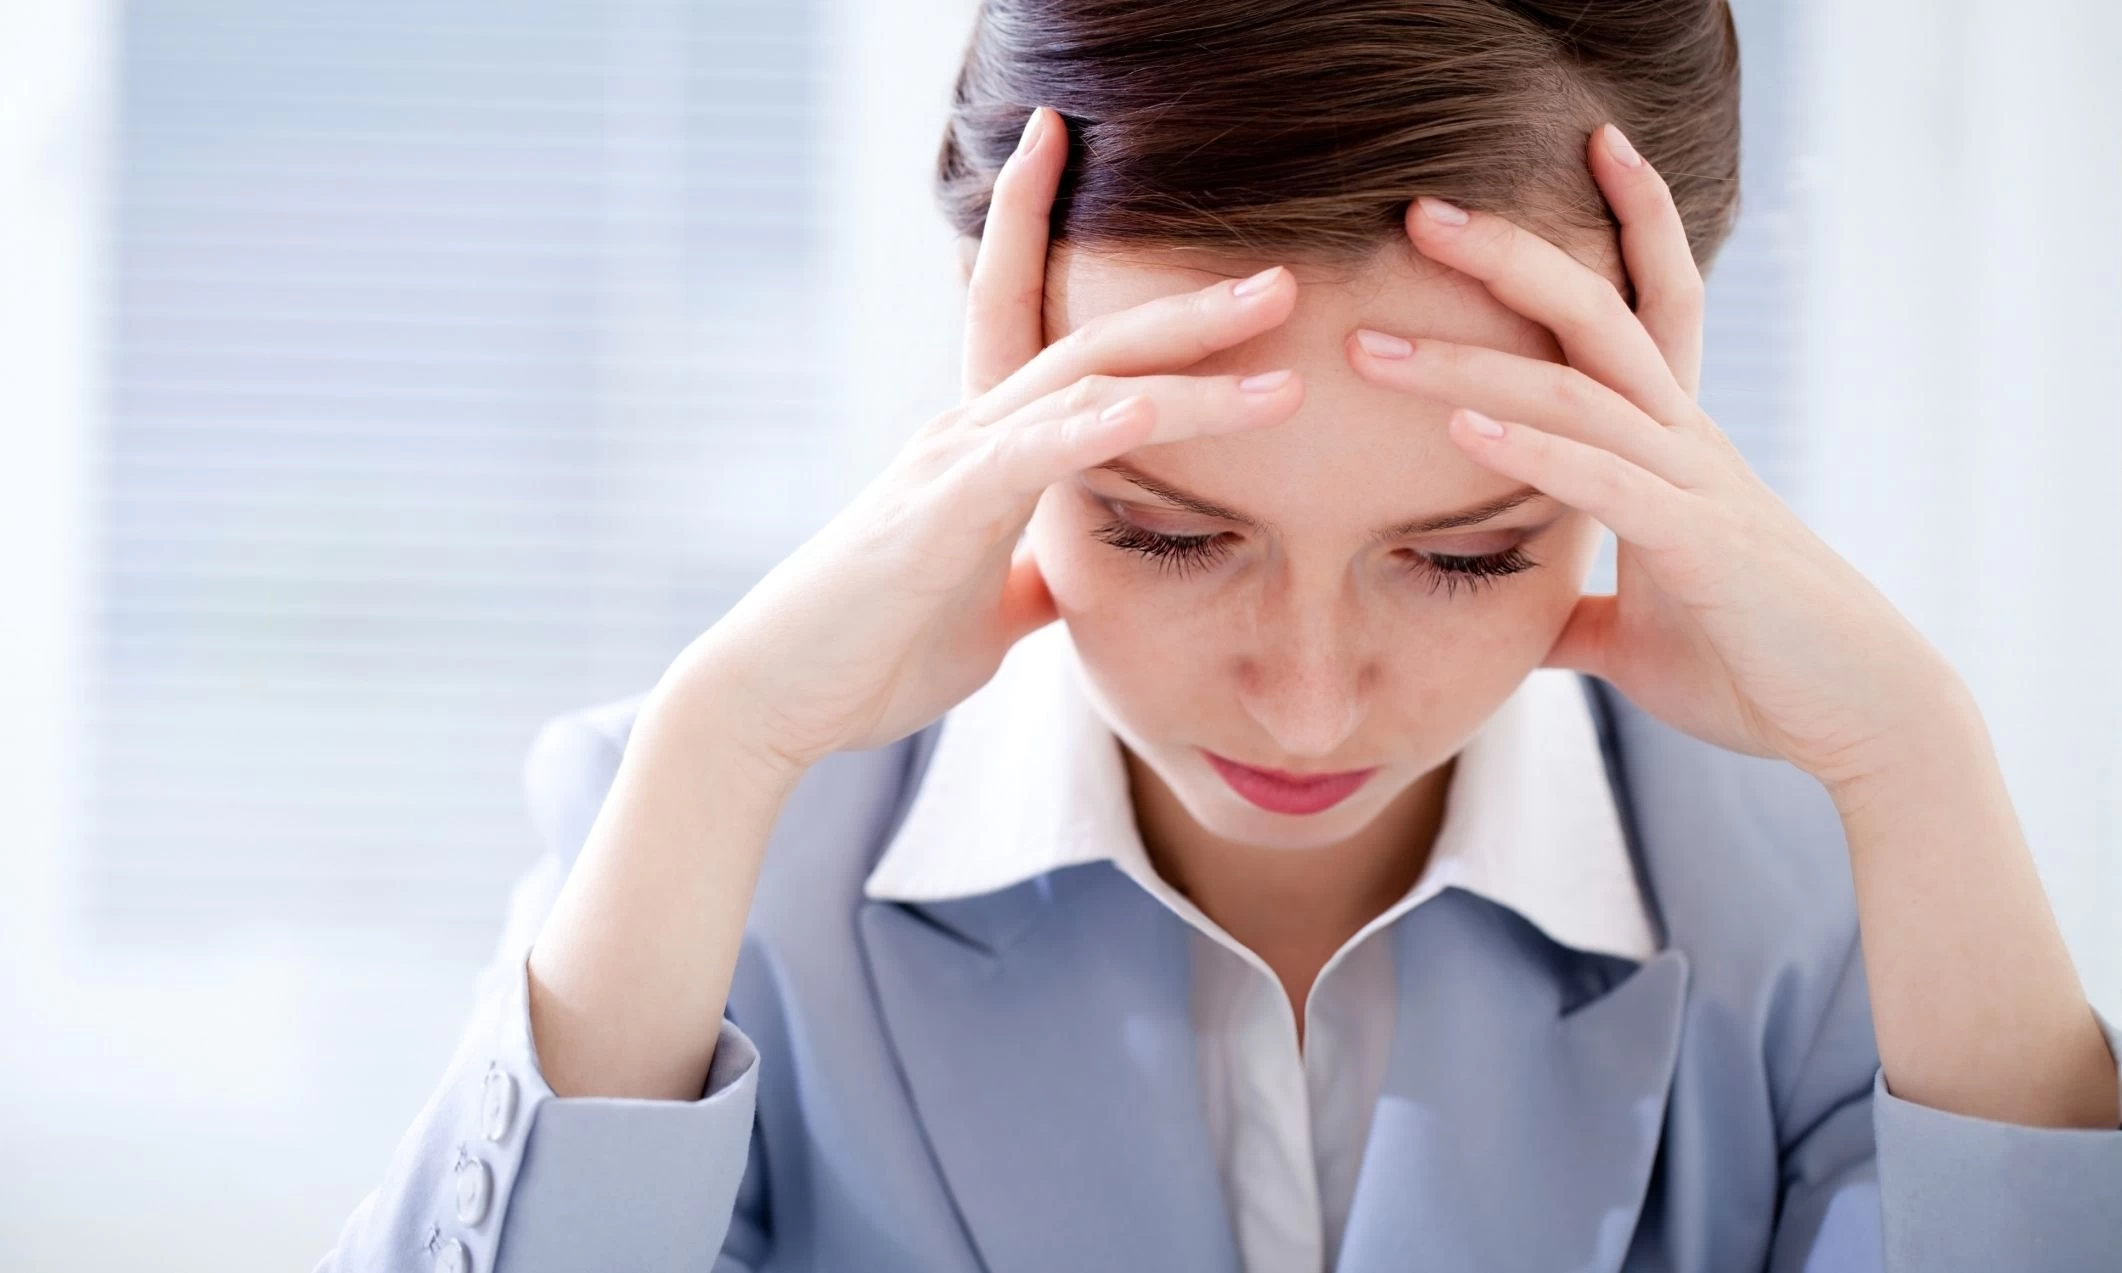 İşyerinde aşırı stres yaşamak genç yaşta kalp krizine sebep olabiliyor